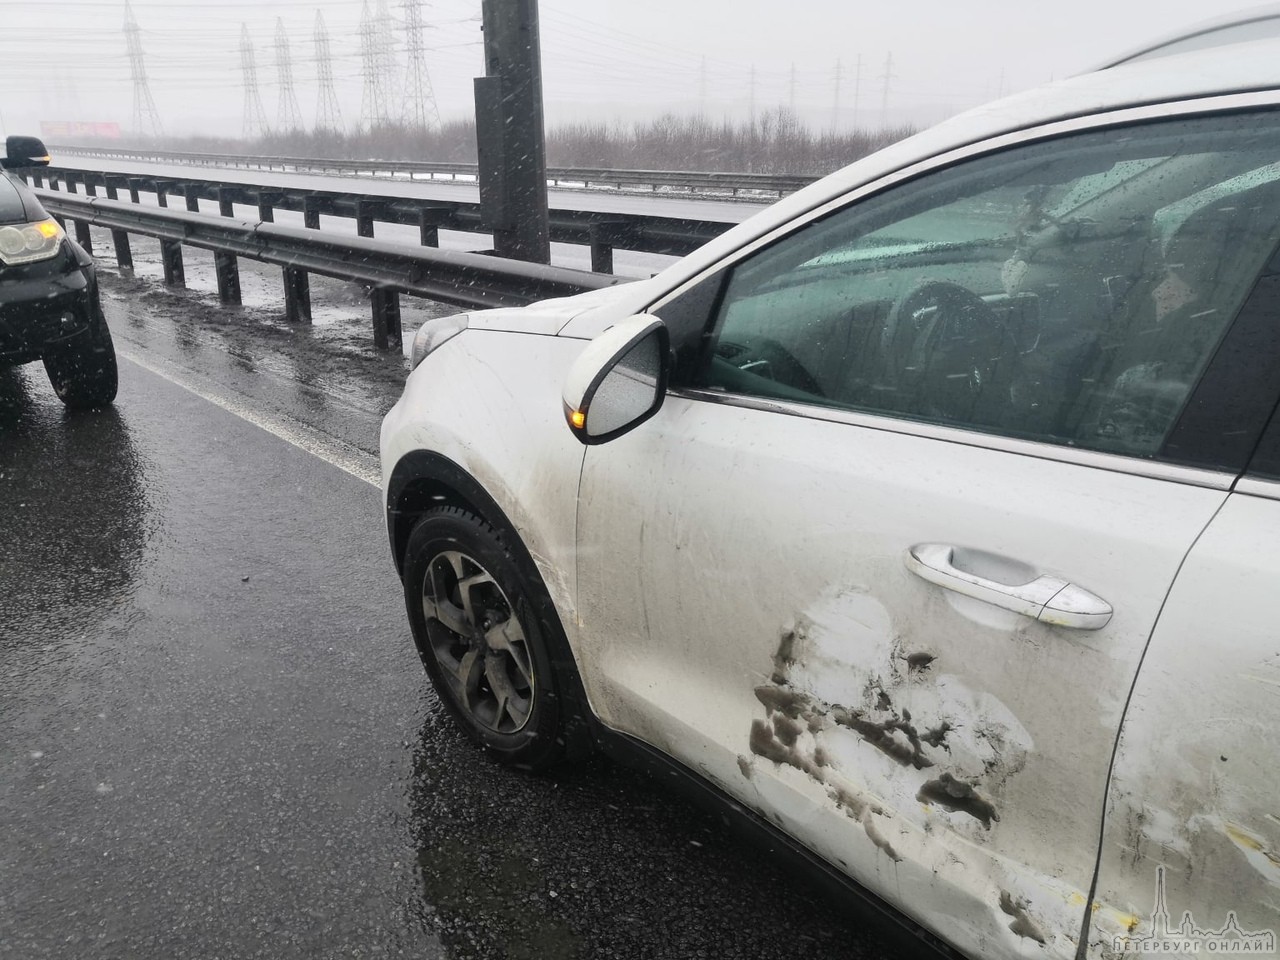 Сегодня примерно в 14:45 произошло ДТП на кольцевой автодороге, между Колтушским шоссе и Мурманским ...